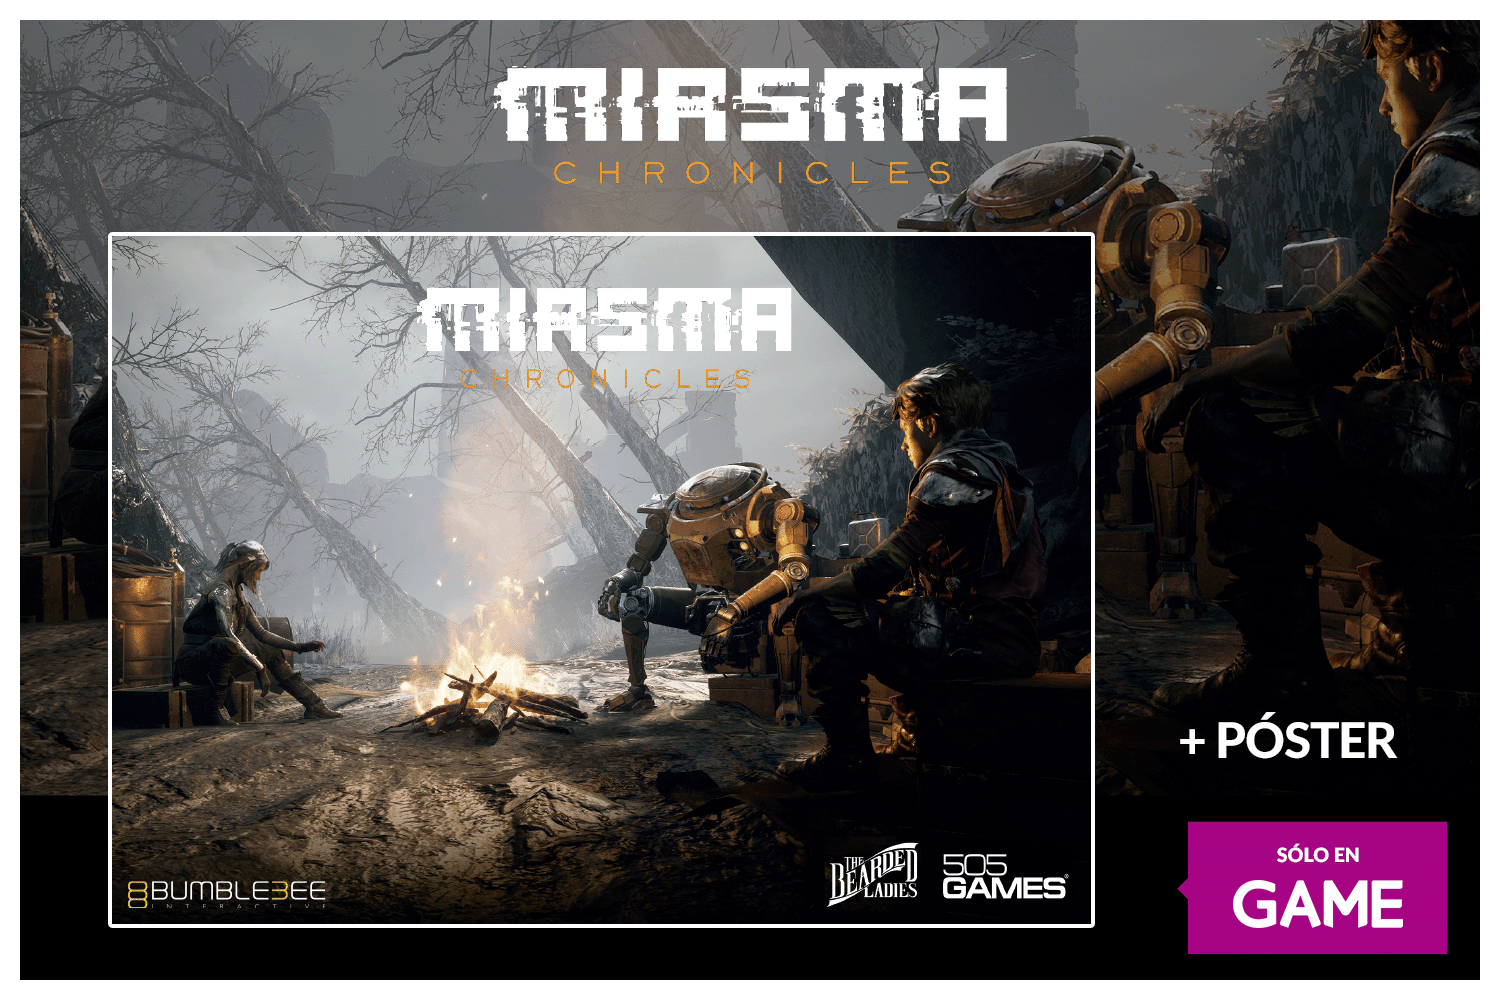 Miasma Chronicles poster reserva game